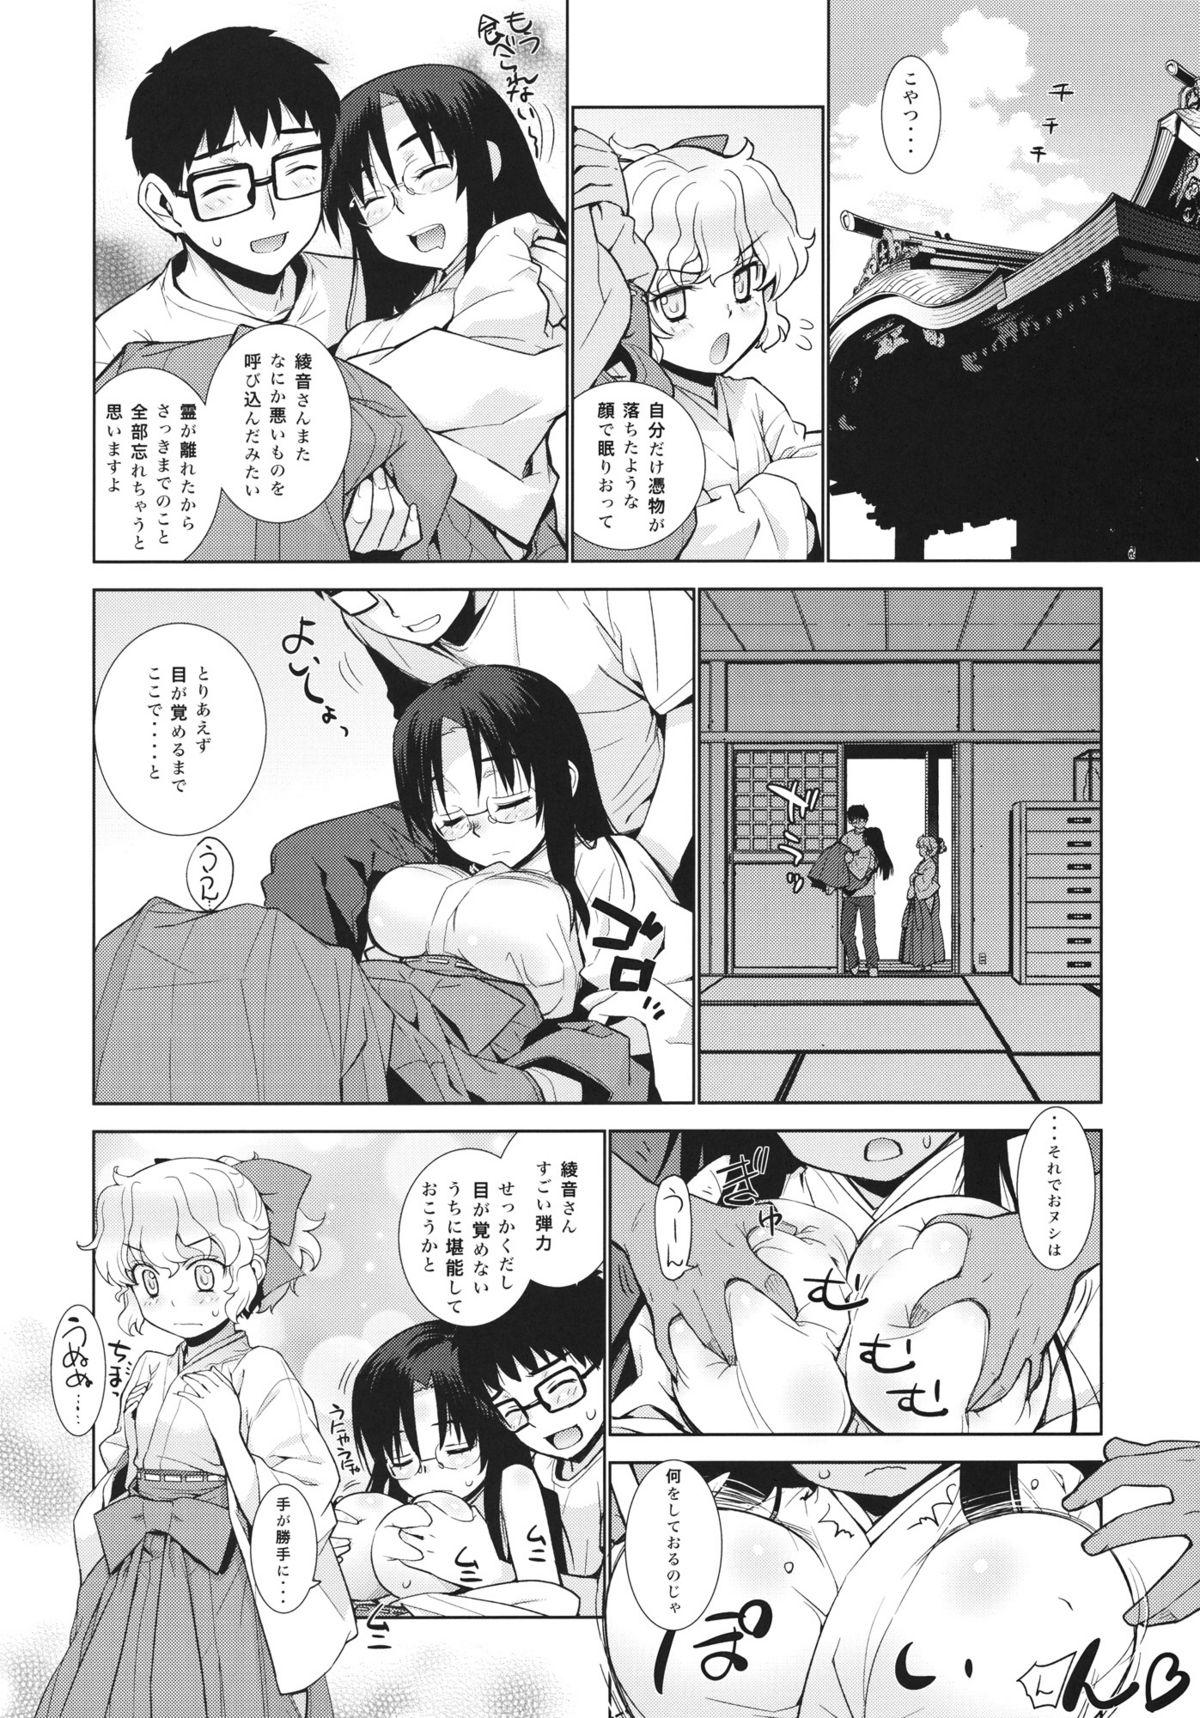 Sucking Dick Kanara-sama no Nichijou Nana - Tonari no miko-san wa minna warau 8teen - Page 6